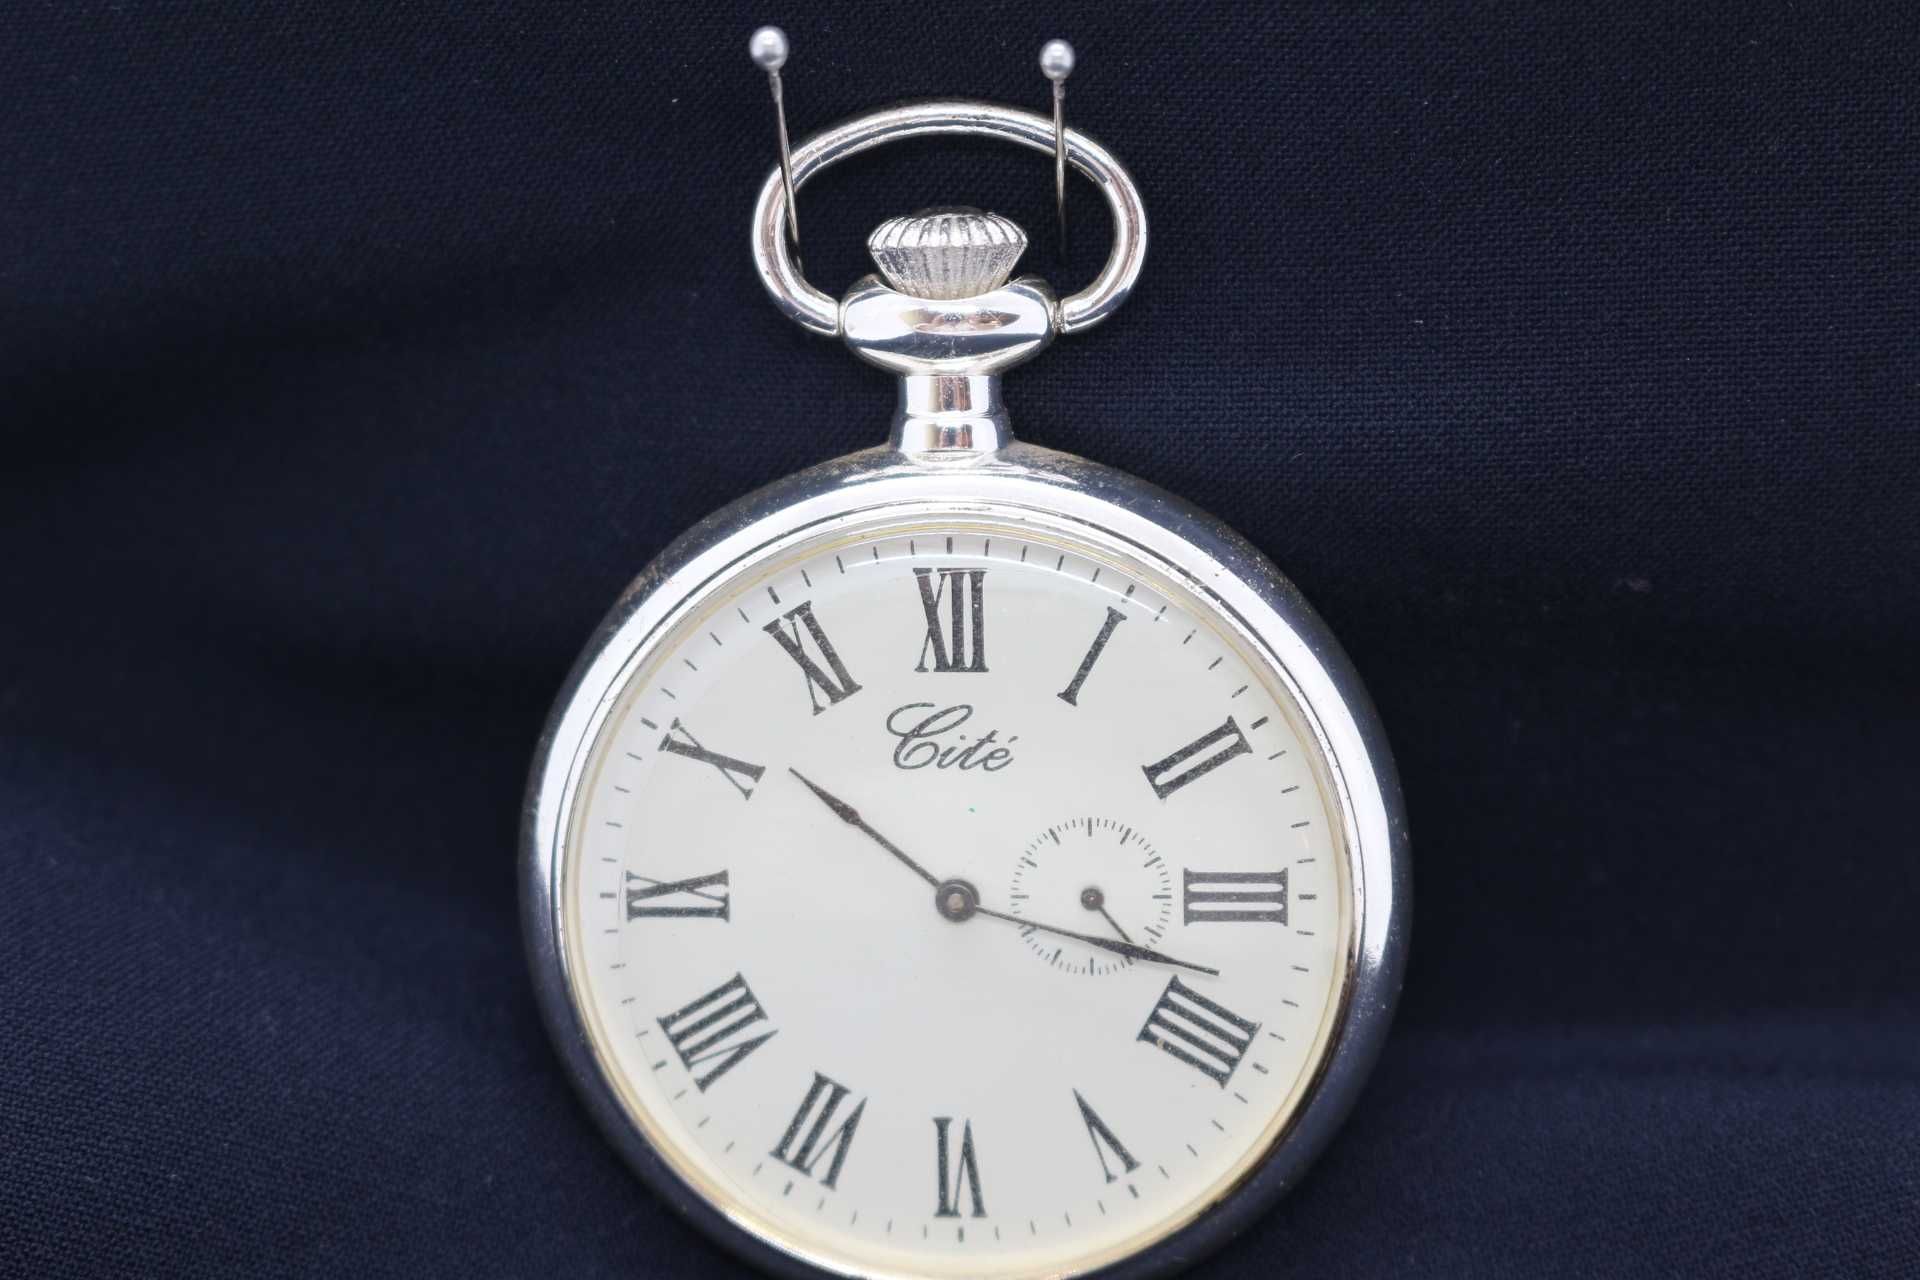 Relógios de Bolso - The Heritage Collection - Cité - Edição 11